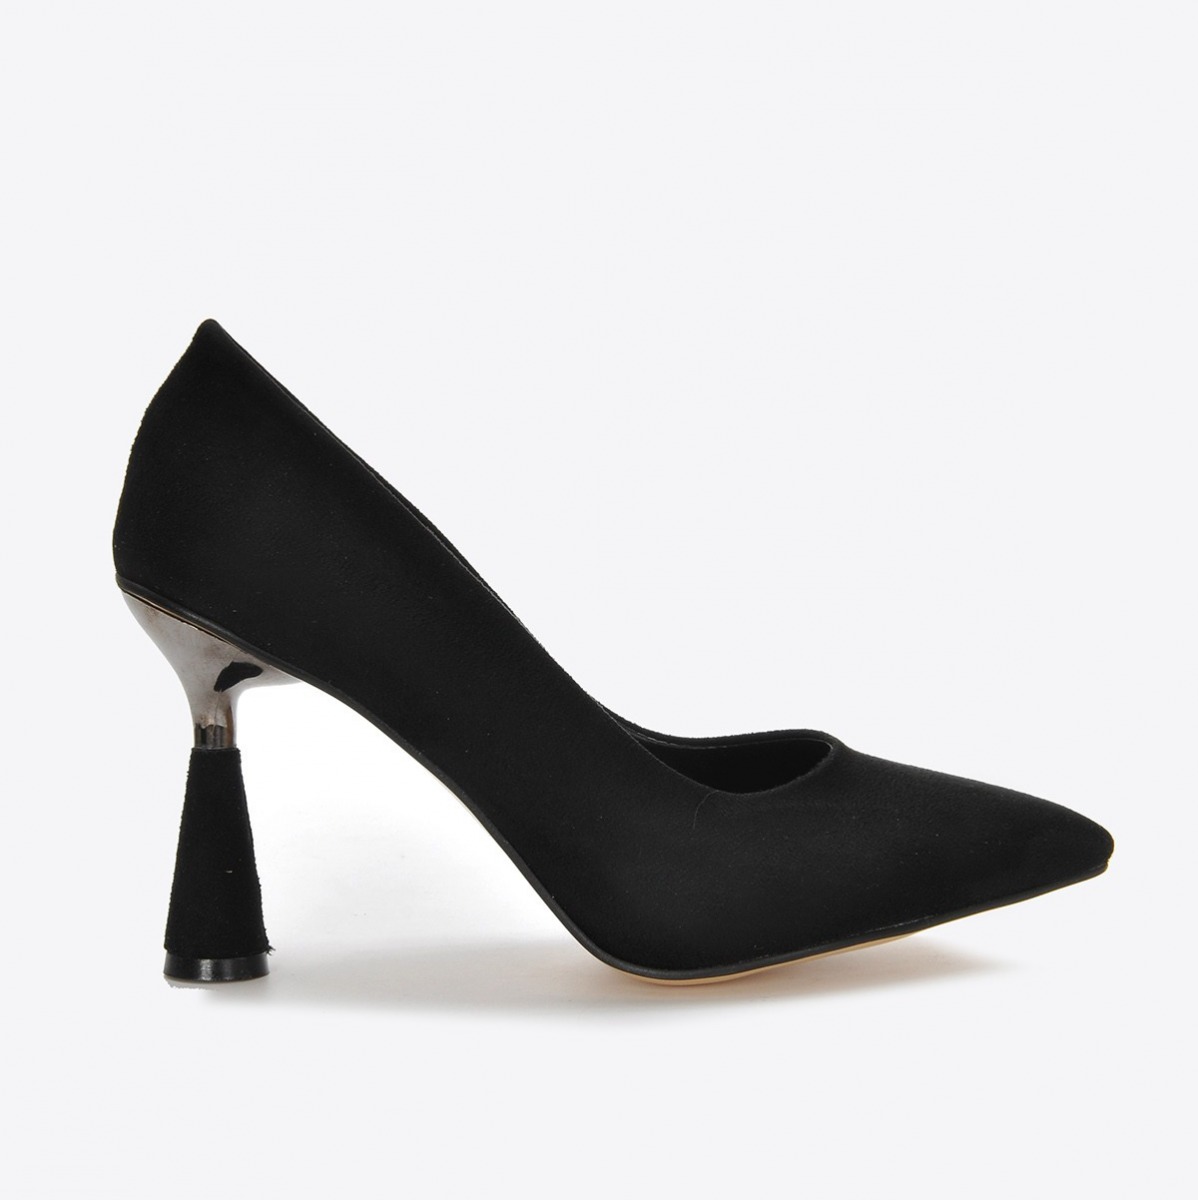 Flo Kadın Siyah Süet Klasik Topuklu Ayakkabı VZN21-037Y. 1